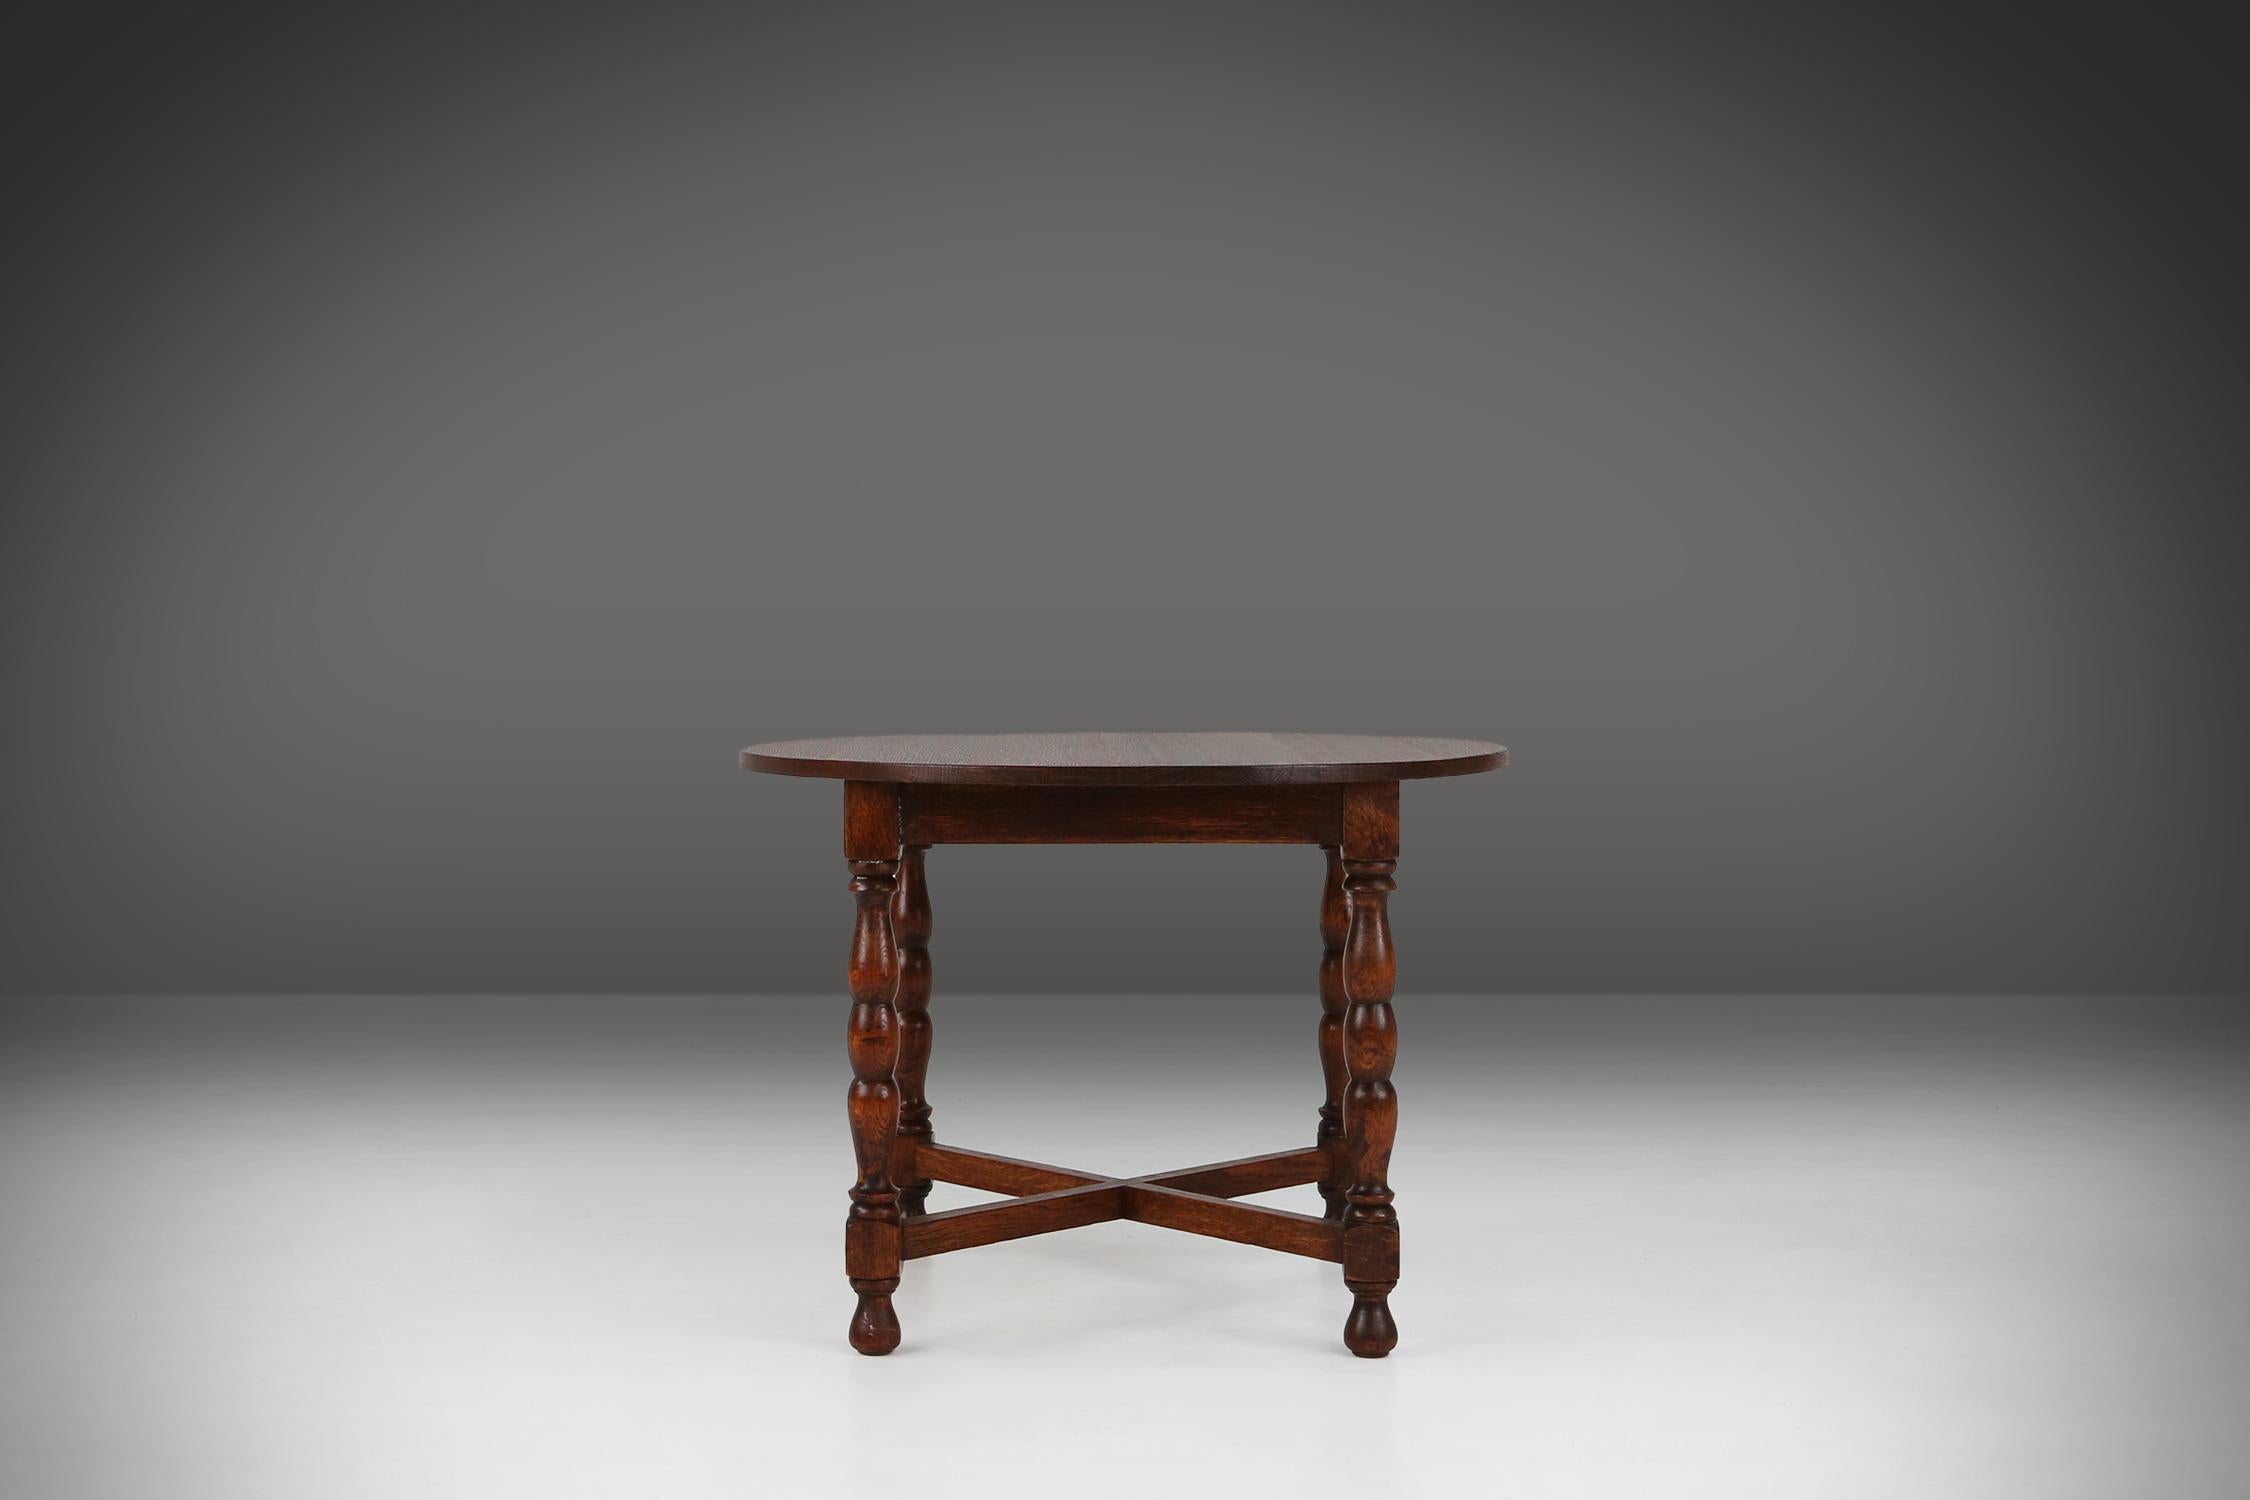 Dieser elegante Beistelltisch verbindet klassischen Charme mit Beständigkeit. Mit seiner reichen, dunklen Holzoberfläche und den zierlichen Beinen ist dieser Tisch eine stilvolle Ergänzung für jeden Raum. Er bietet nicht nur eine bequeme